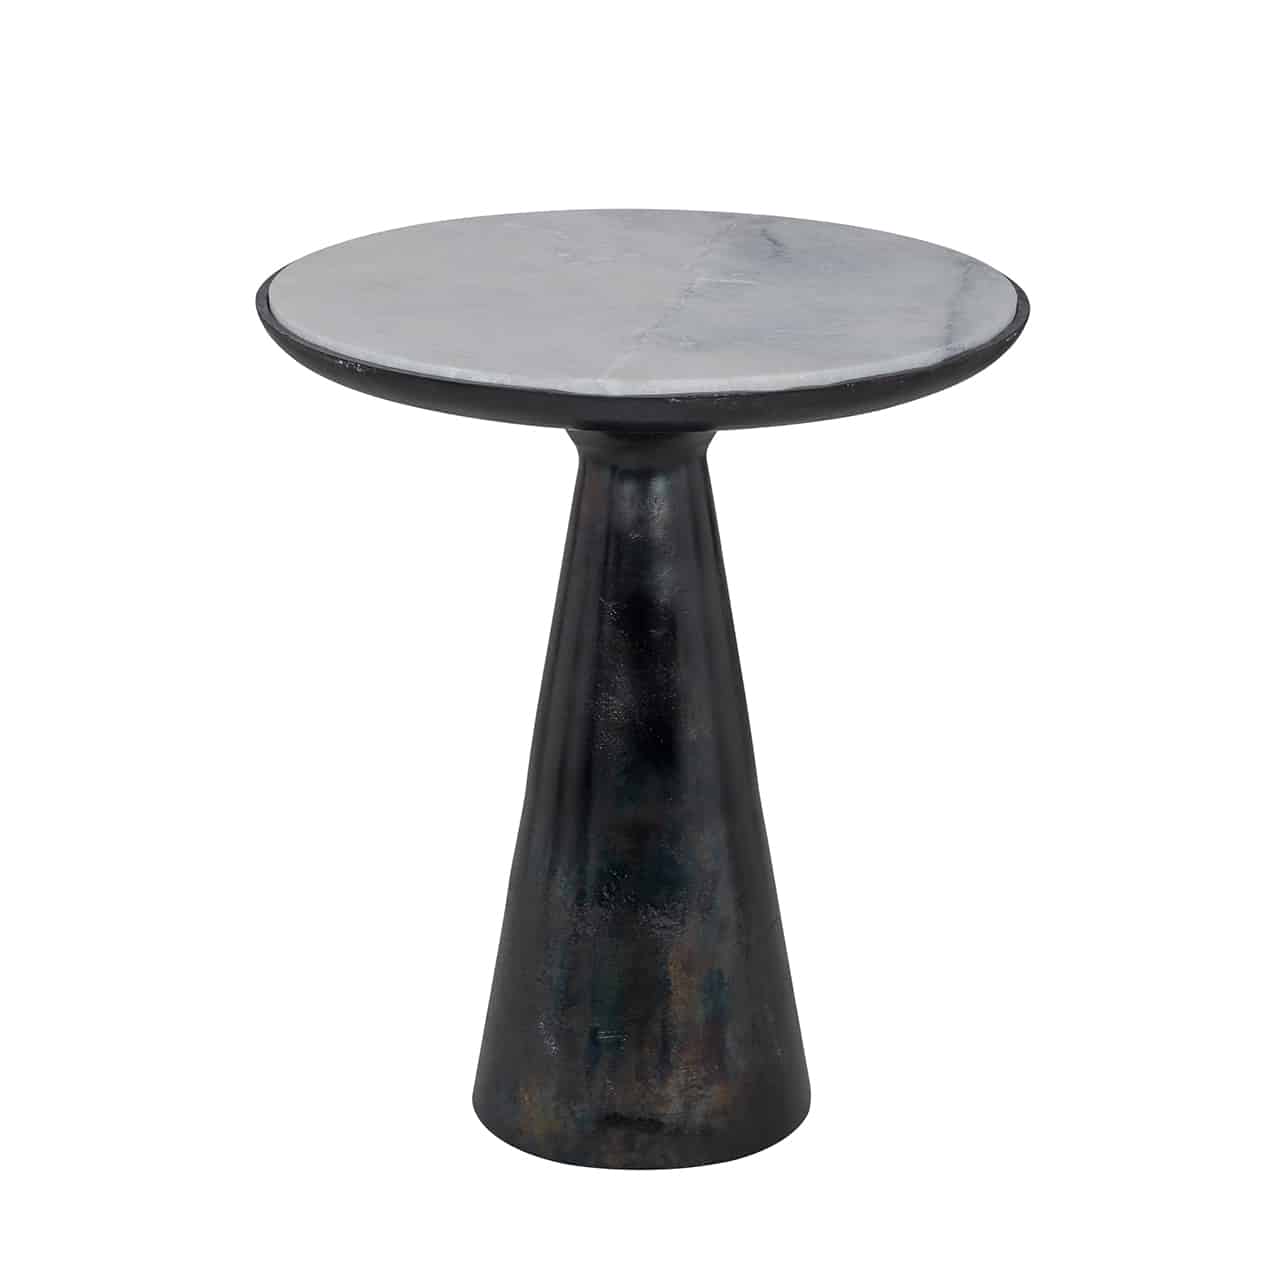 Beistelltisch aus schwarzem Aluminium, bestehend aus einem schmalen Kegel, der sich nach oben wieder zu einer breiten, runden Platte weitet.